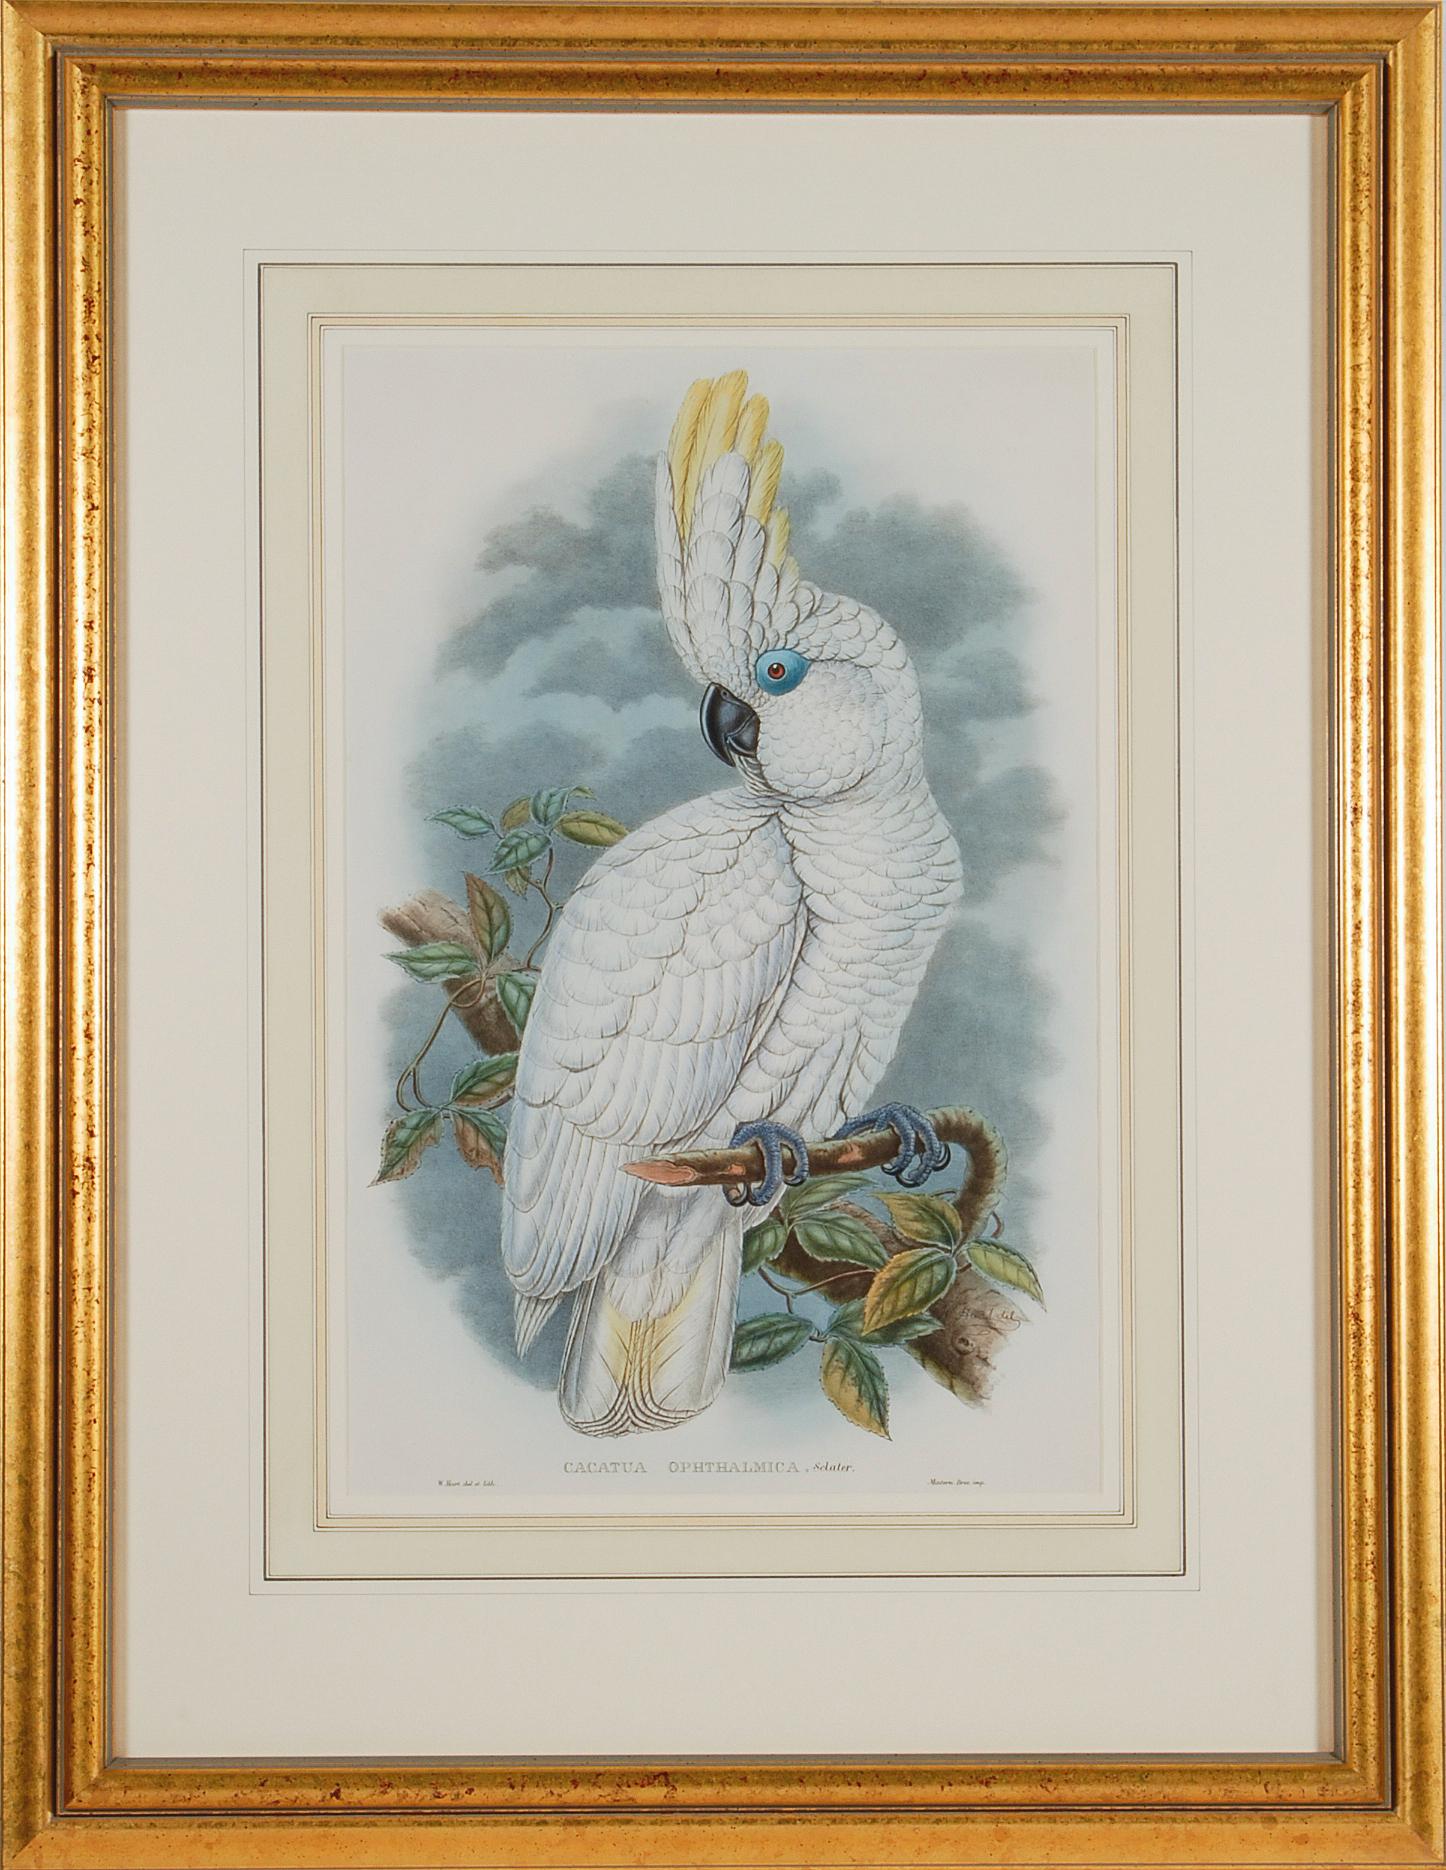 Blaugefärbter Cockatoo: Eine gerahmte Original-Lithographie aus dem 19. Jahrhundert von Gould